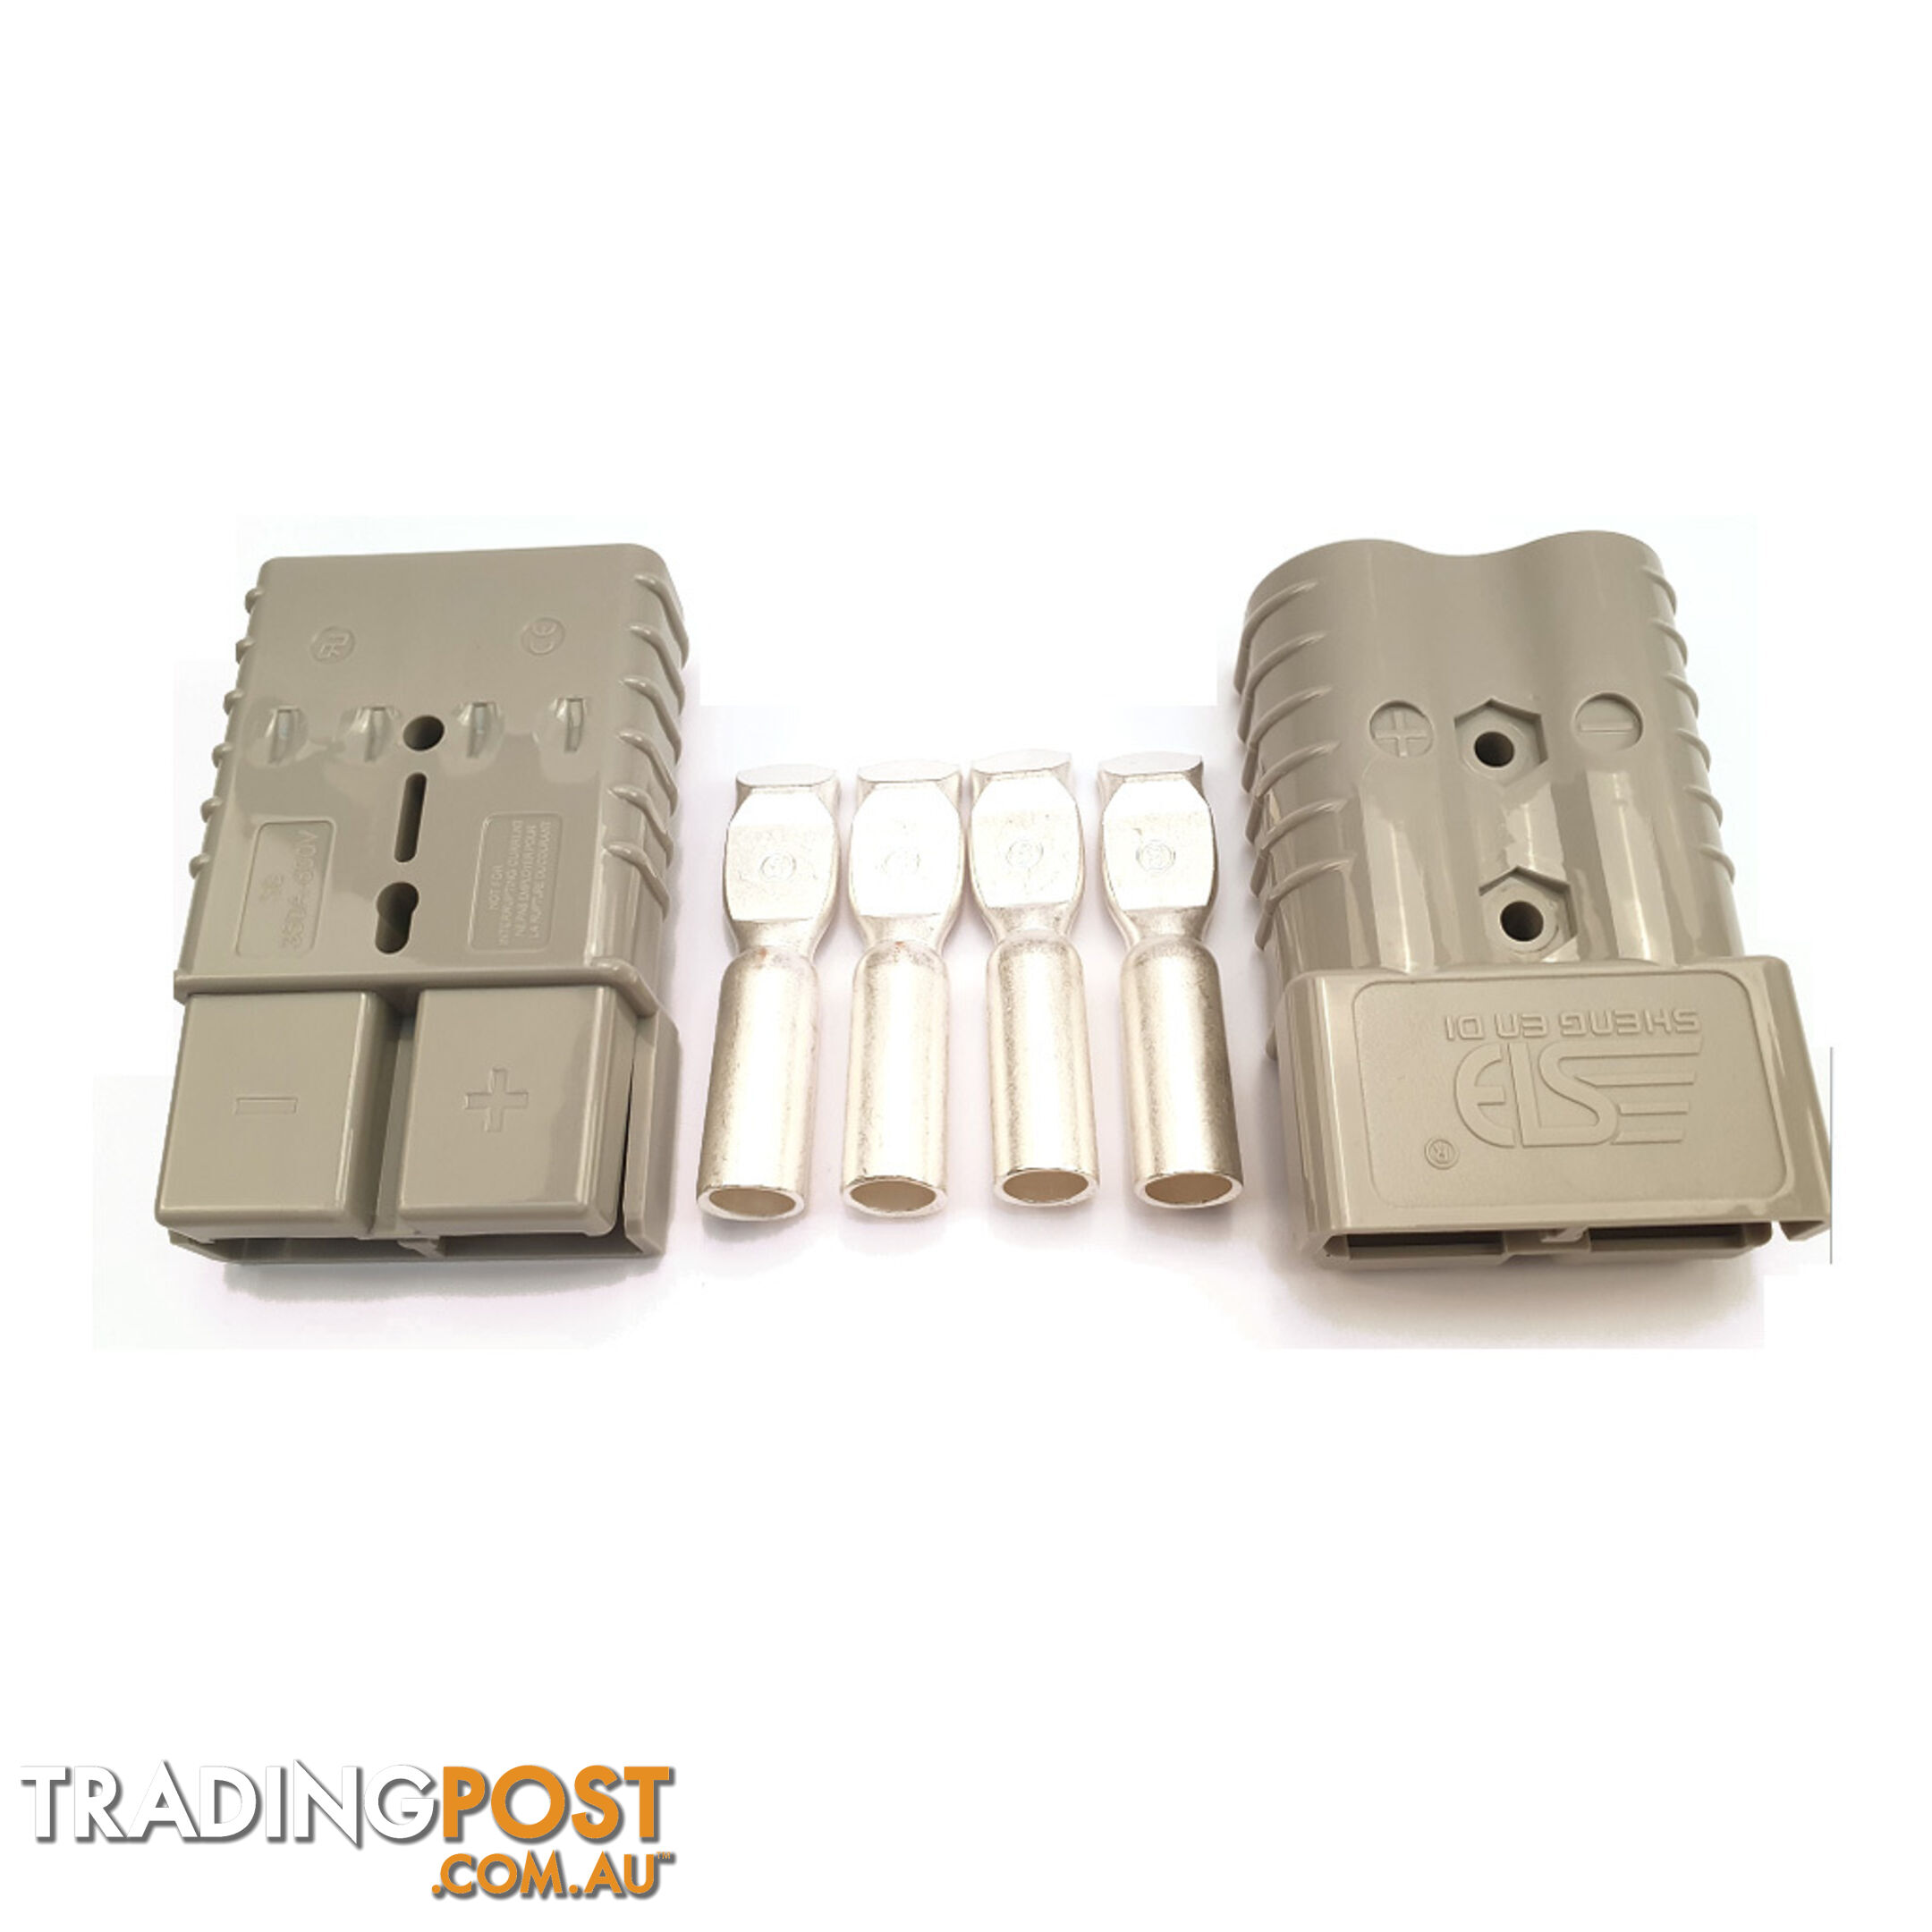 350 amp Anderson Plugs x 2 with Terminals Grey SKU - 35ampAndox2